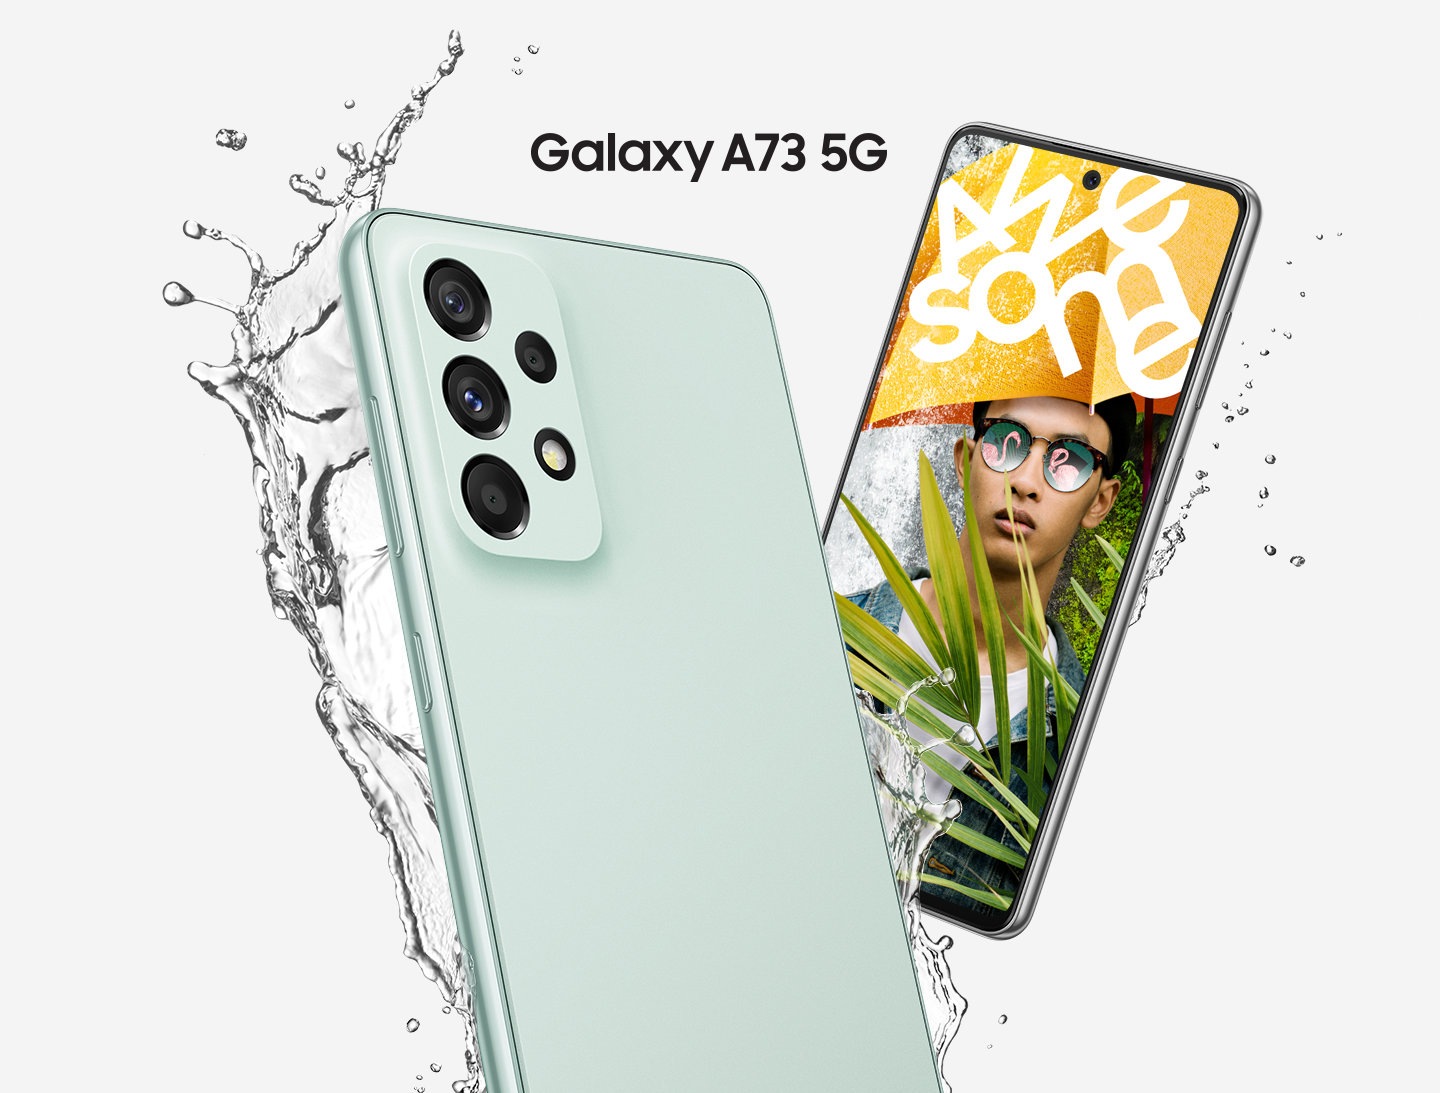 Deux appareils Galaxy A73 5G, en Awesome Mint, sont présentés avec un appareil montrant l'arrière et l'autre montrant l'avant.  De l'eau est éclaboussée pour afficher la résistance à l'eau tandis que le dispositif frontal montre un homme portant un parapluie jaune sur lequel est écrit Awesome en texte blanc.